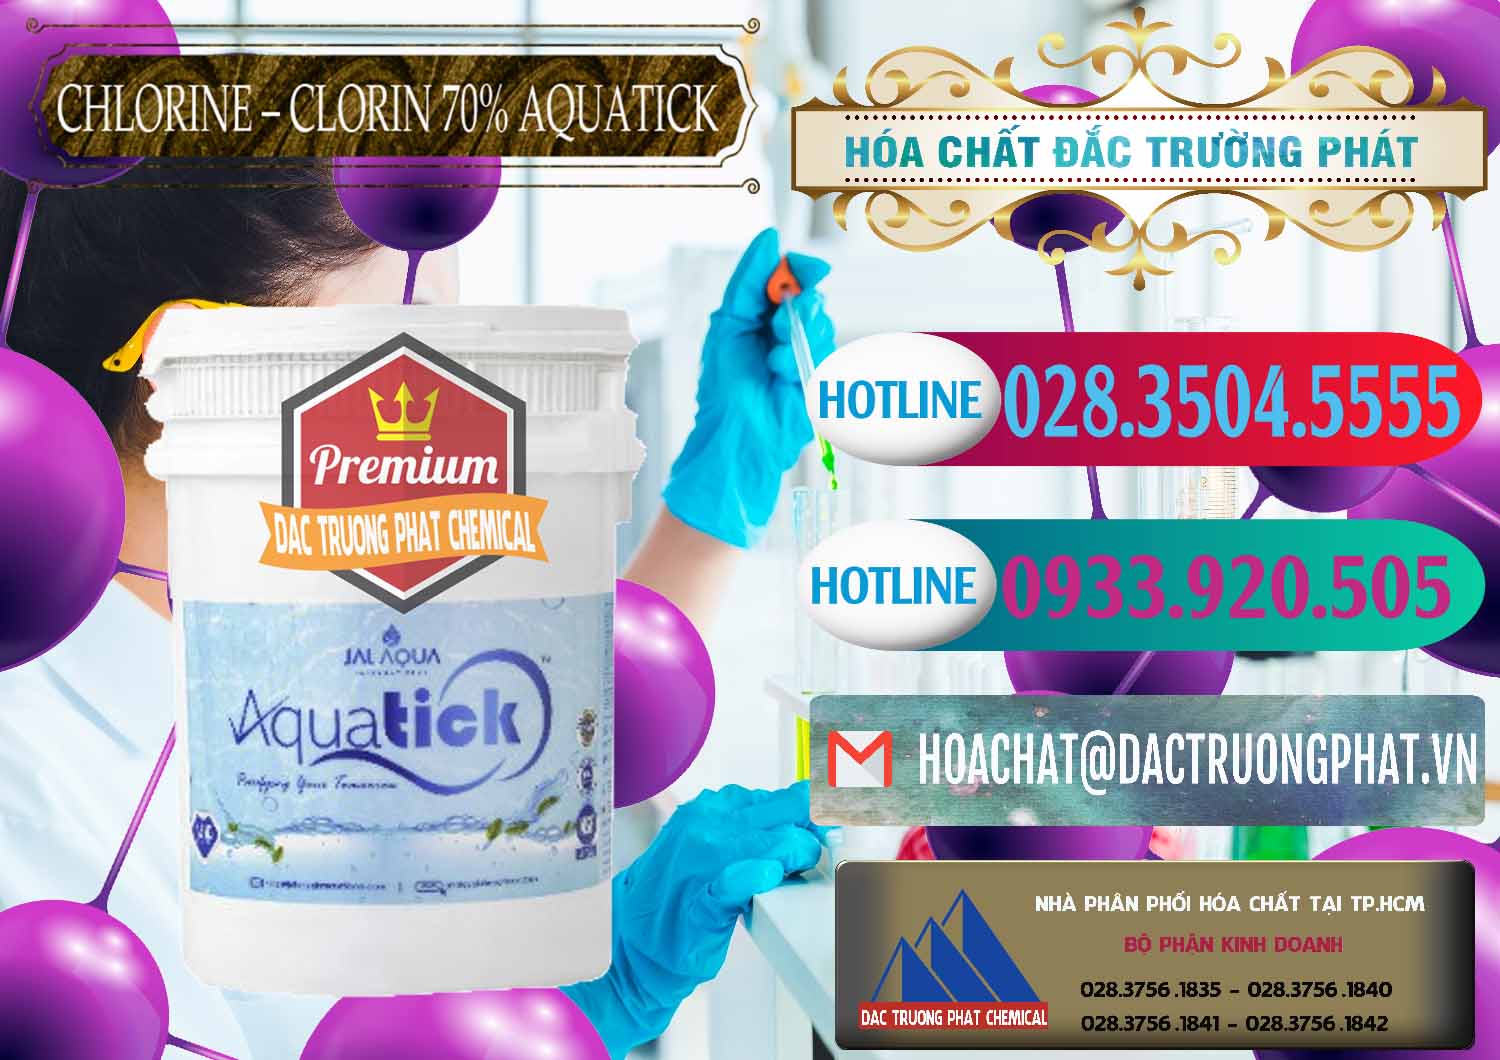 Đơn vị chuyên kinh doanh ( bán ) Chlorine – Clorin 70% Aquatick Thùng Cao Jal Aqua Ấn Độ India - 0237 - Nơi chuyên phân phối & kinh doanh hóa chất tại TP.HCM - truongphat.vn